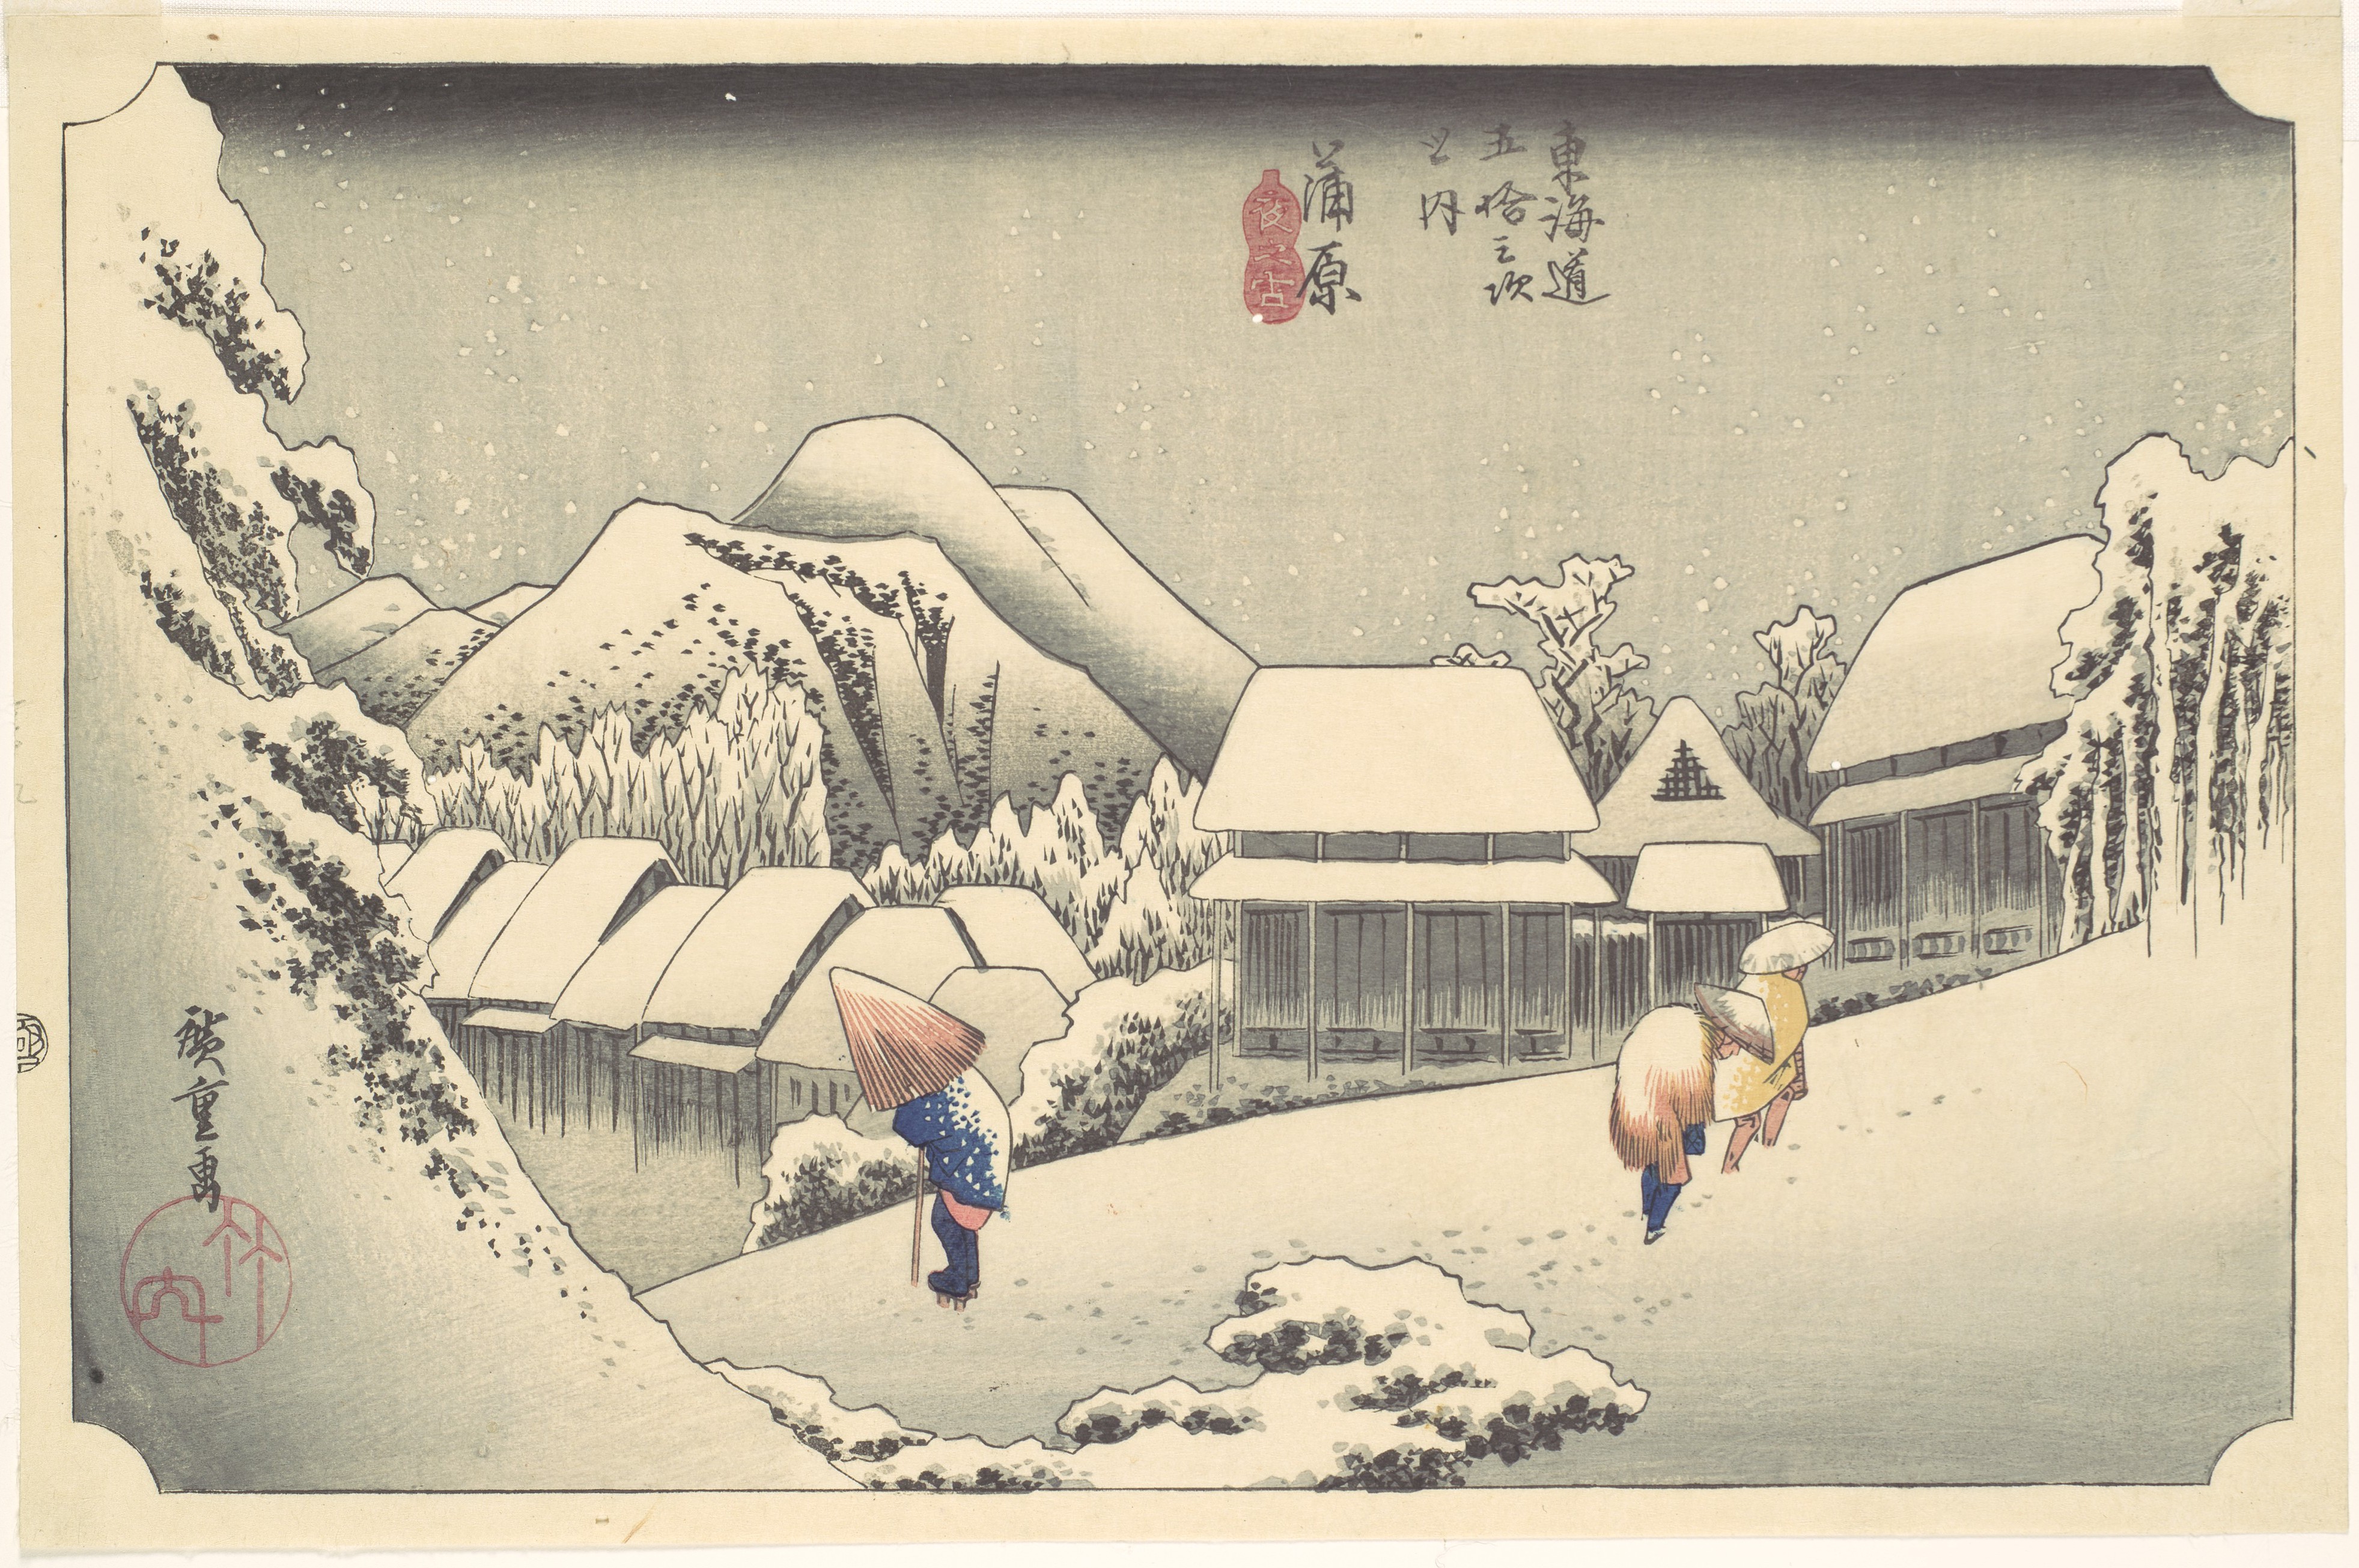 蒲原 夜之雪 by  Hiroshige - 1833–1834年頃 - 21.9 × 35.5 cm 